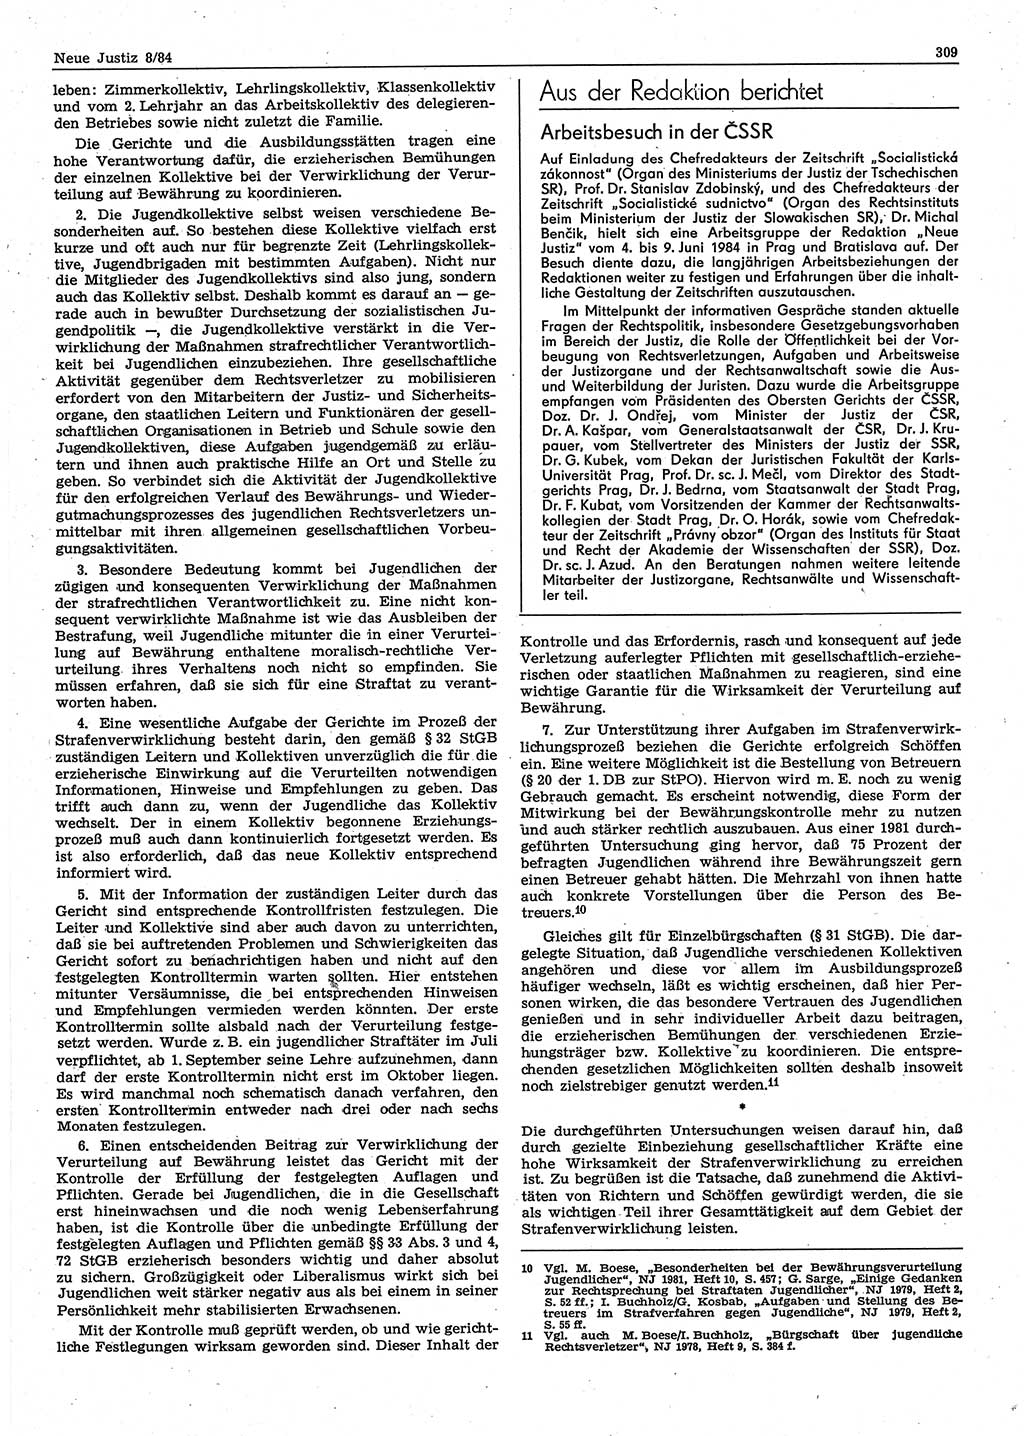 Neue Justiz (NJ), Zeitschrift für sozialistisches Recht und Gesetzlichkeit [Deutsche Demokratische Republik (DDR)], 38. Jahrgang 1984, Seite 309 (NJ DDR 1984, S. 309)